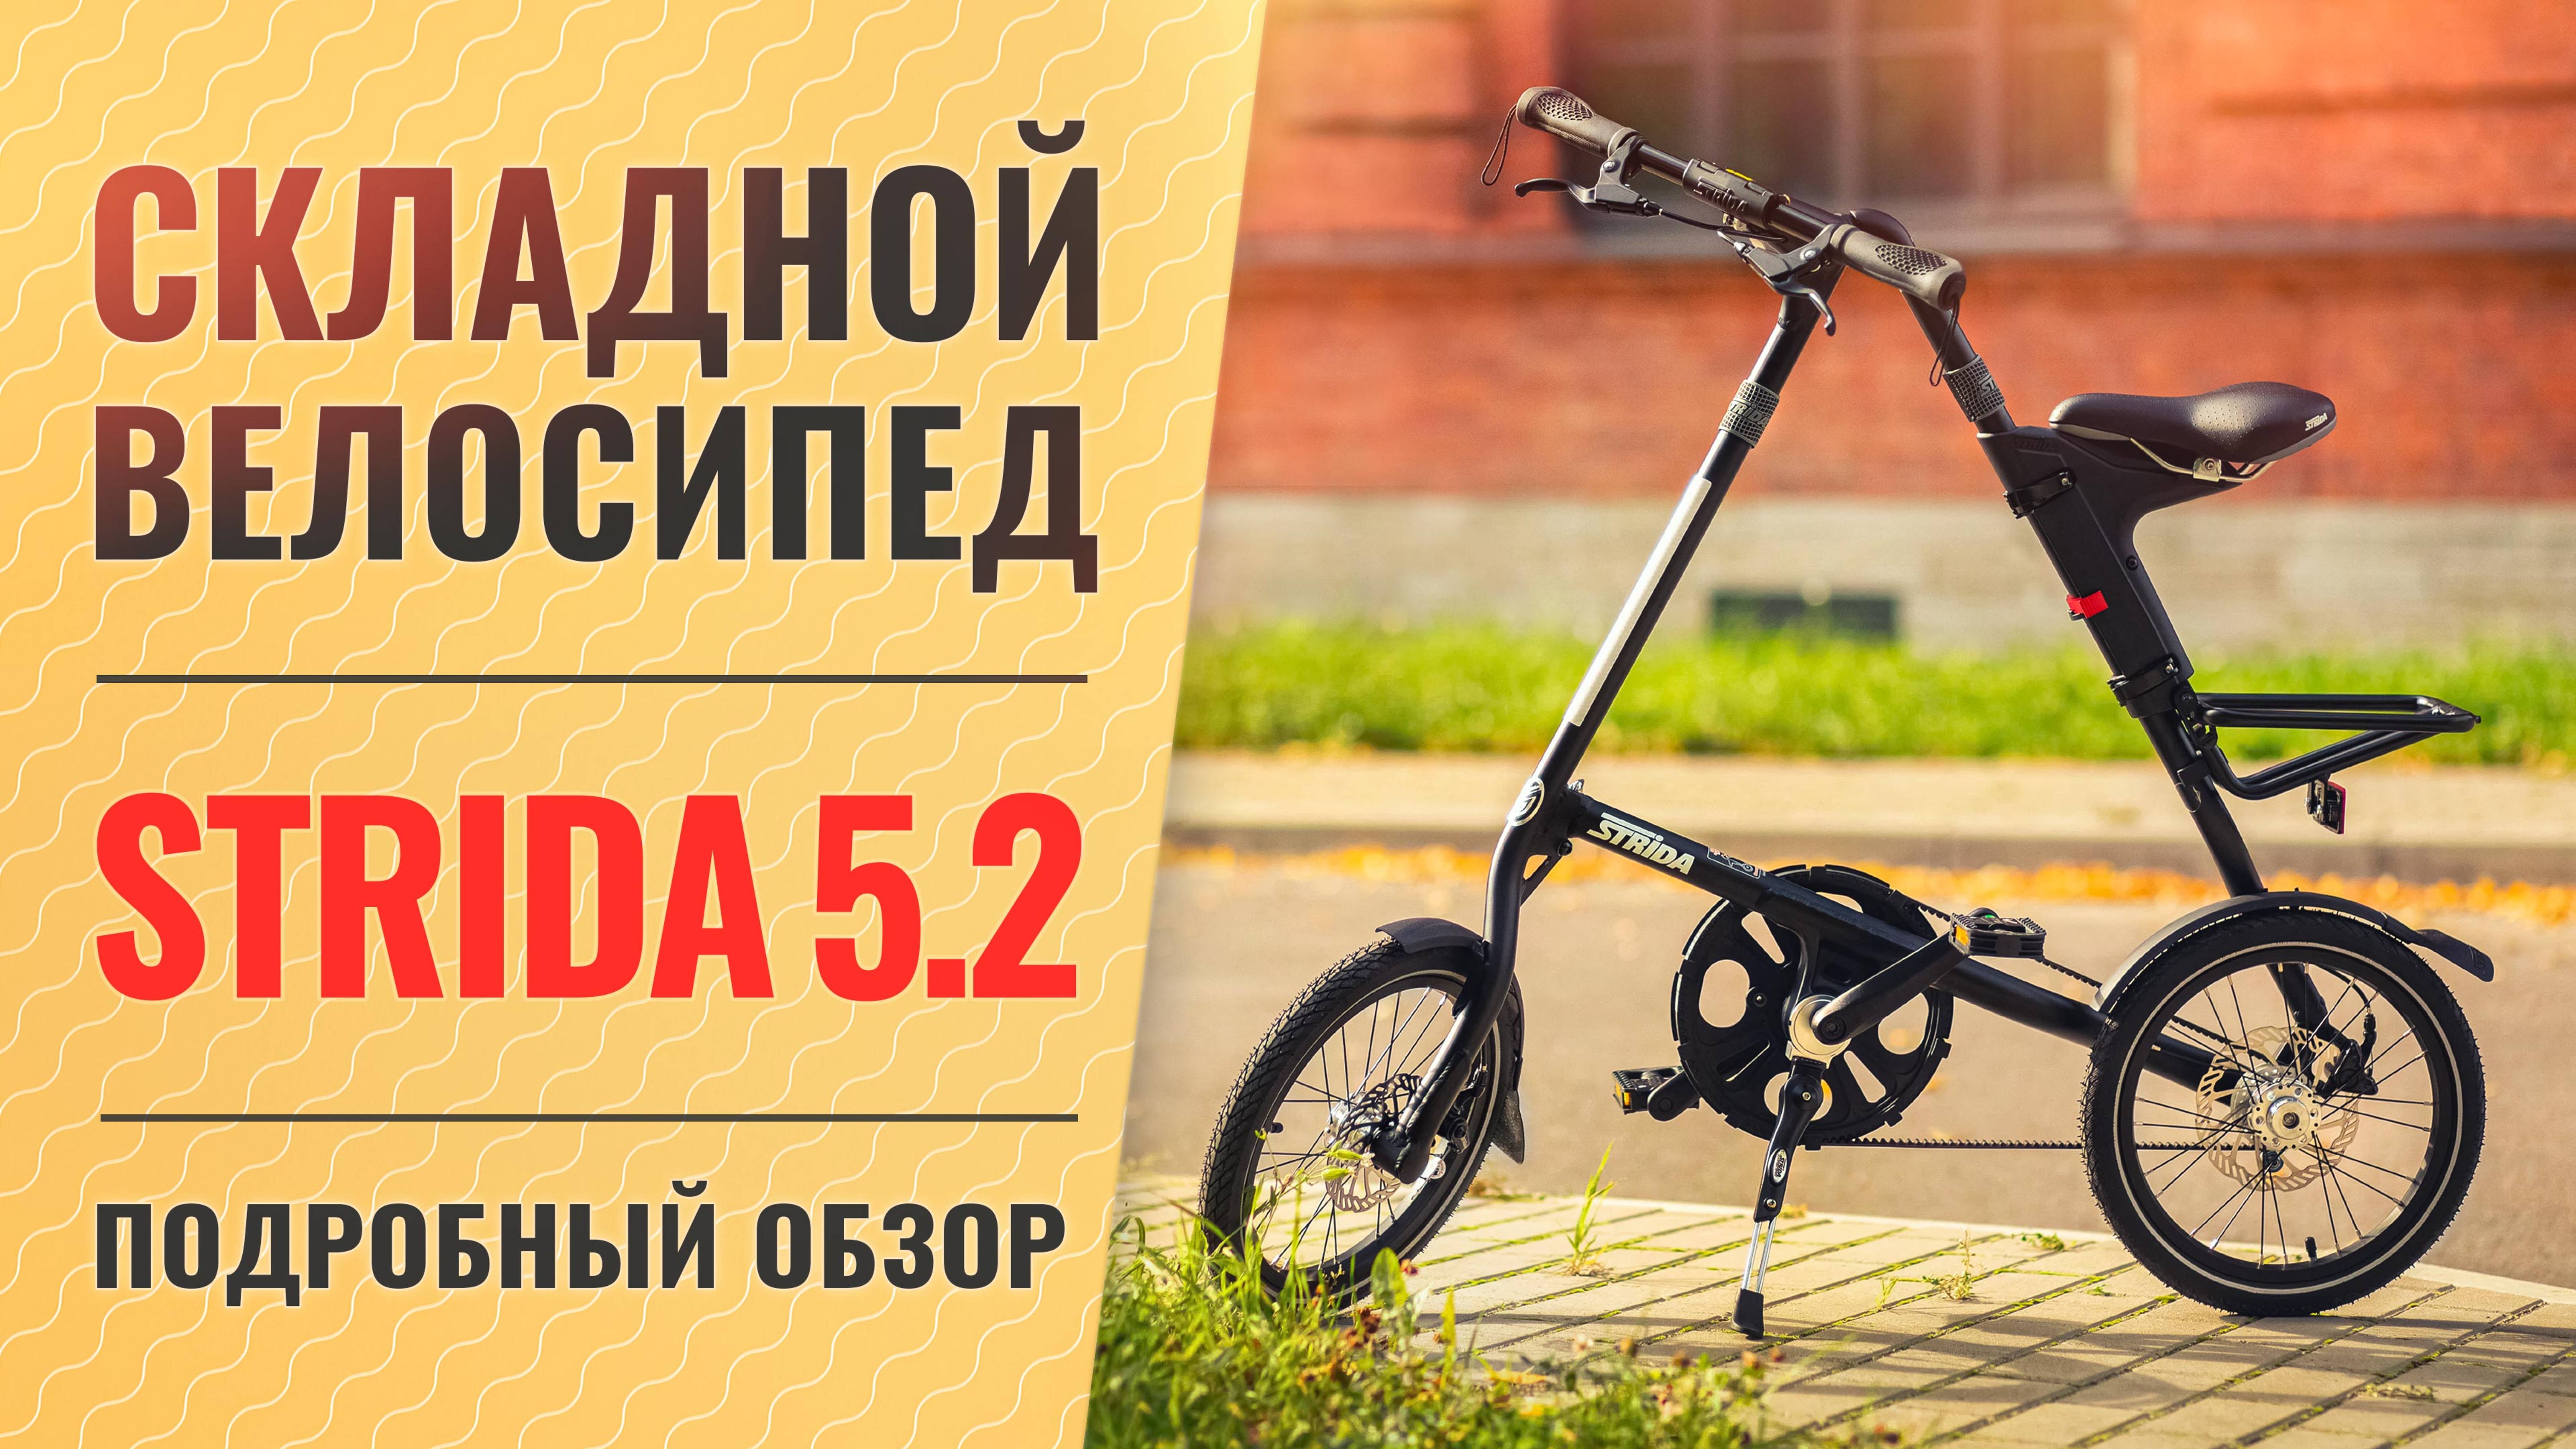 Обзор складного велосипеда STRIDA 5.2 | 16'' колеса, ременная передача и дисковых тормоза. вес 11 кг